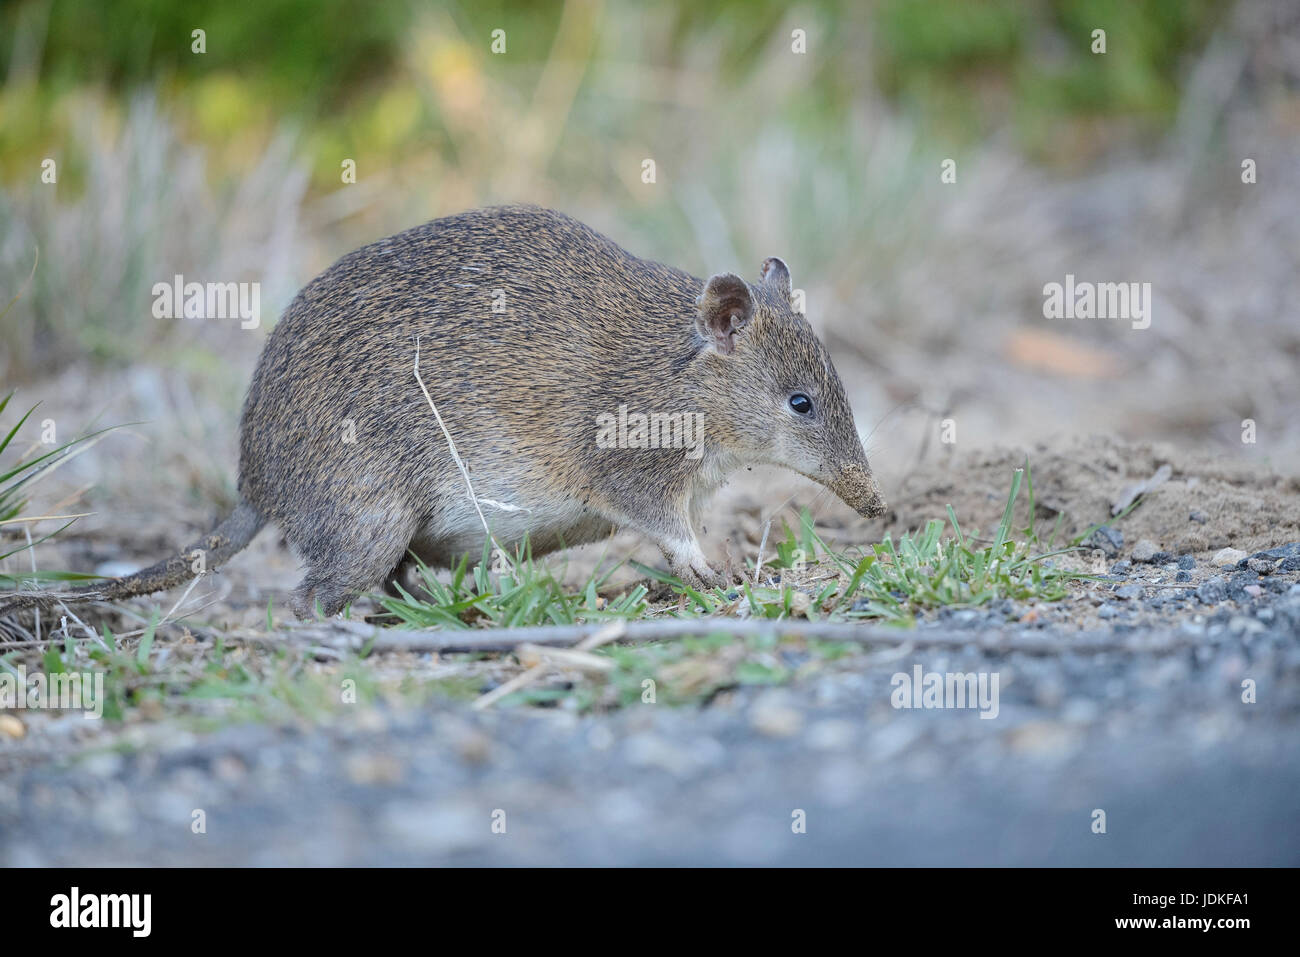 Short nose marsupial looks in the earth for food, Kurznasenbeutler sucht im Erdreich nach Nahrung Stock Photo